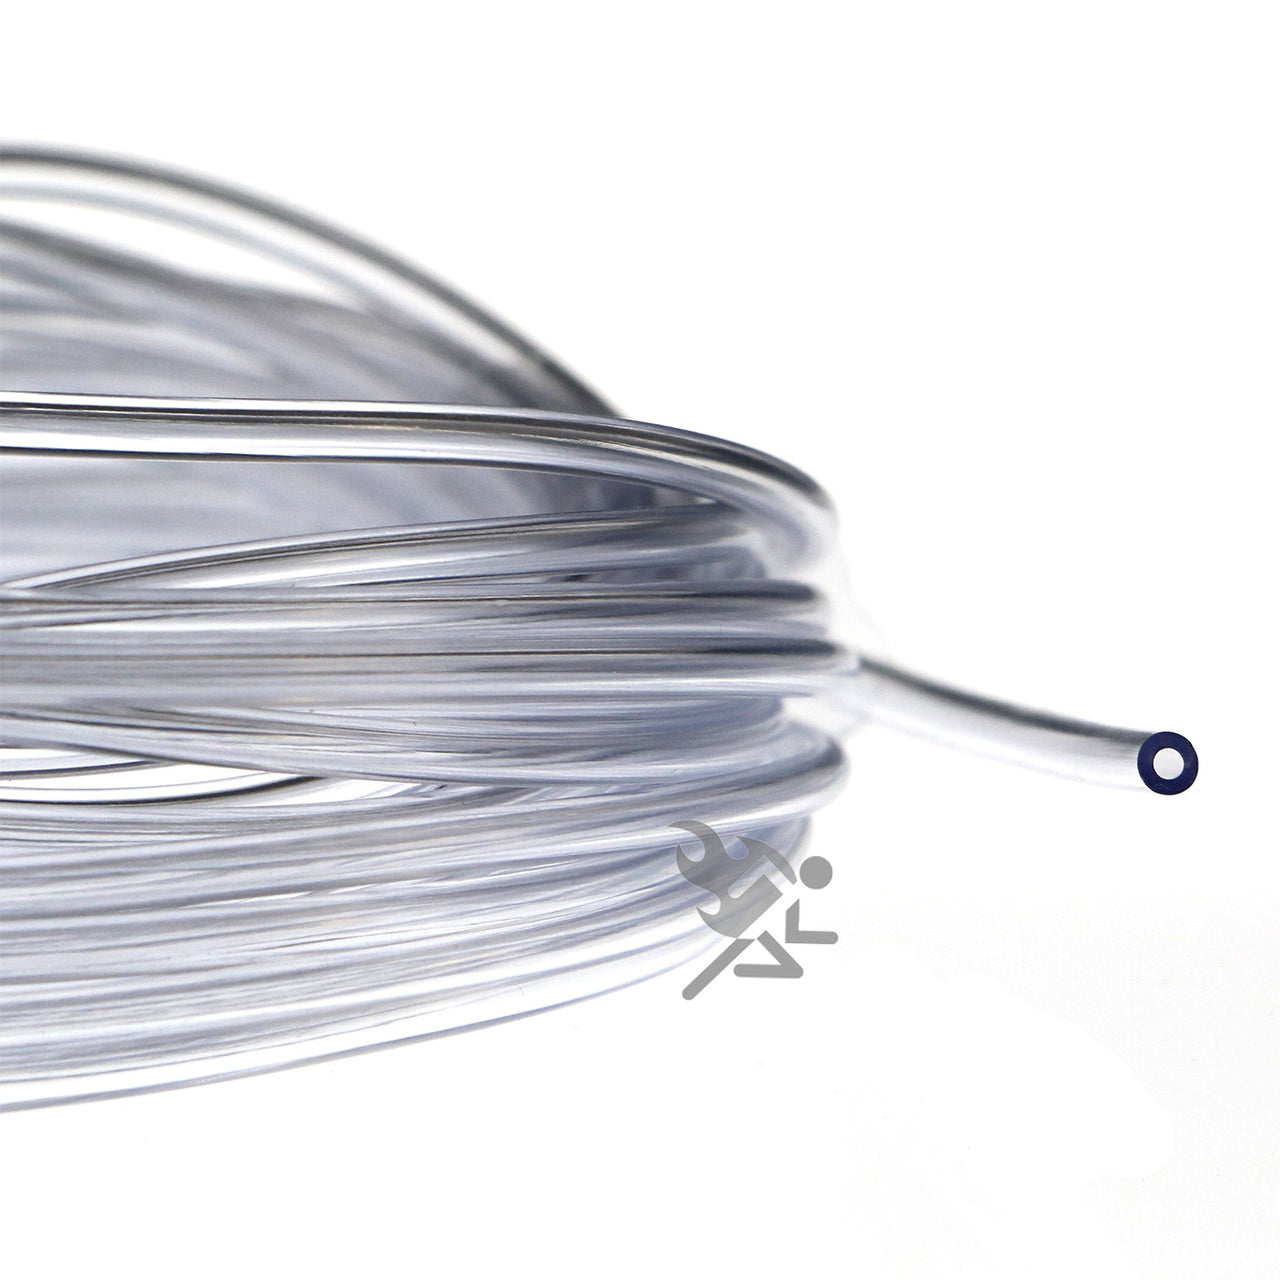 1/16" I.D. Clear Flexible Vinyl Tubing  for Fish Hook Protectors